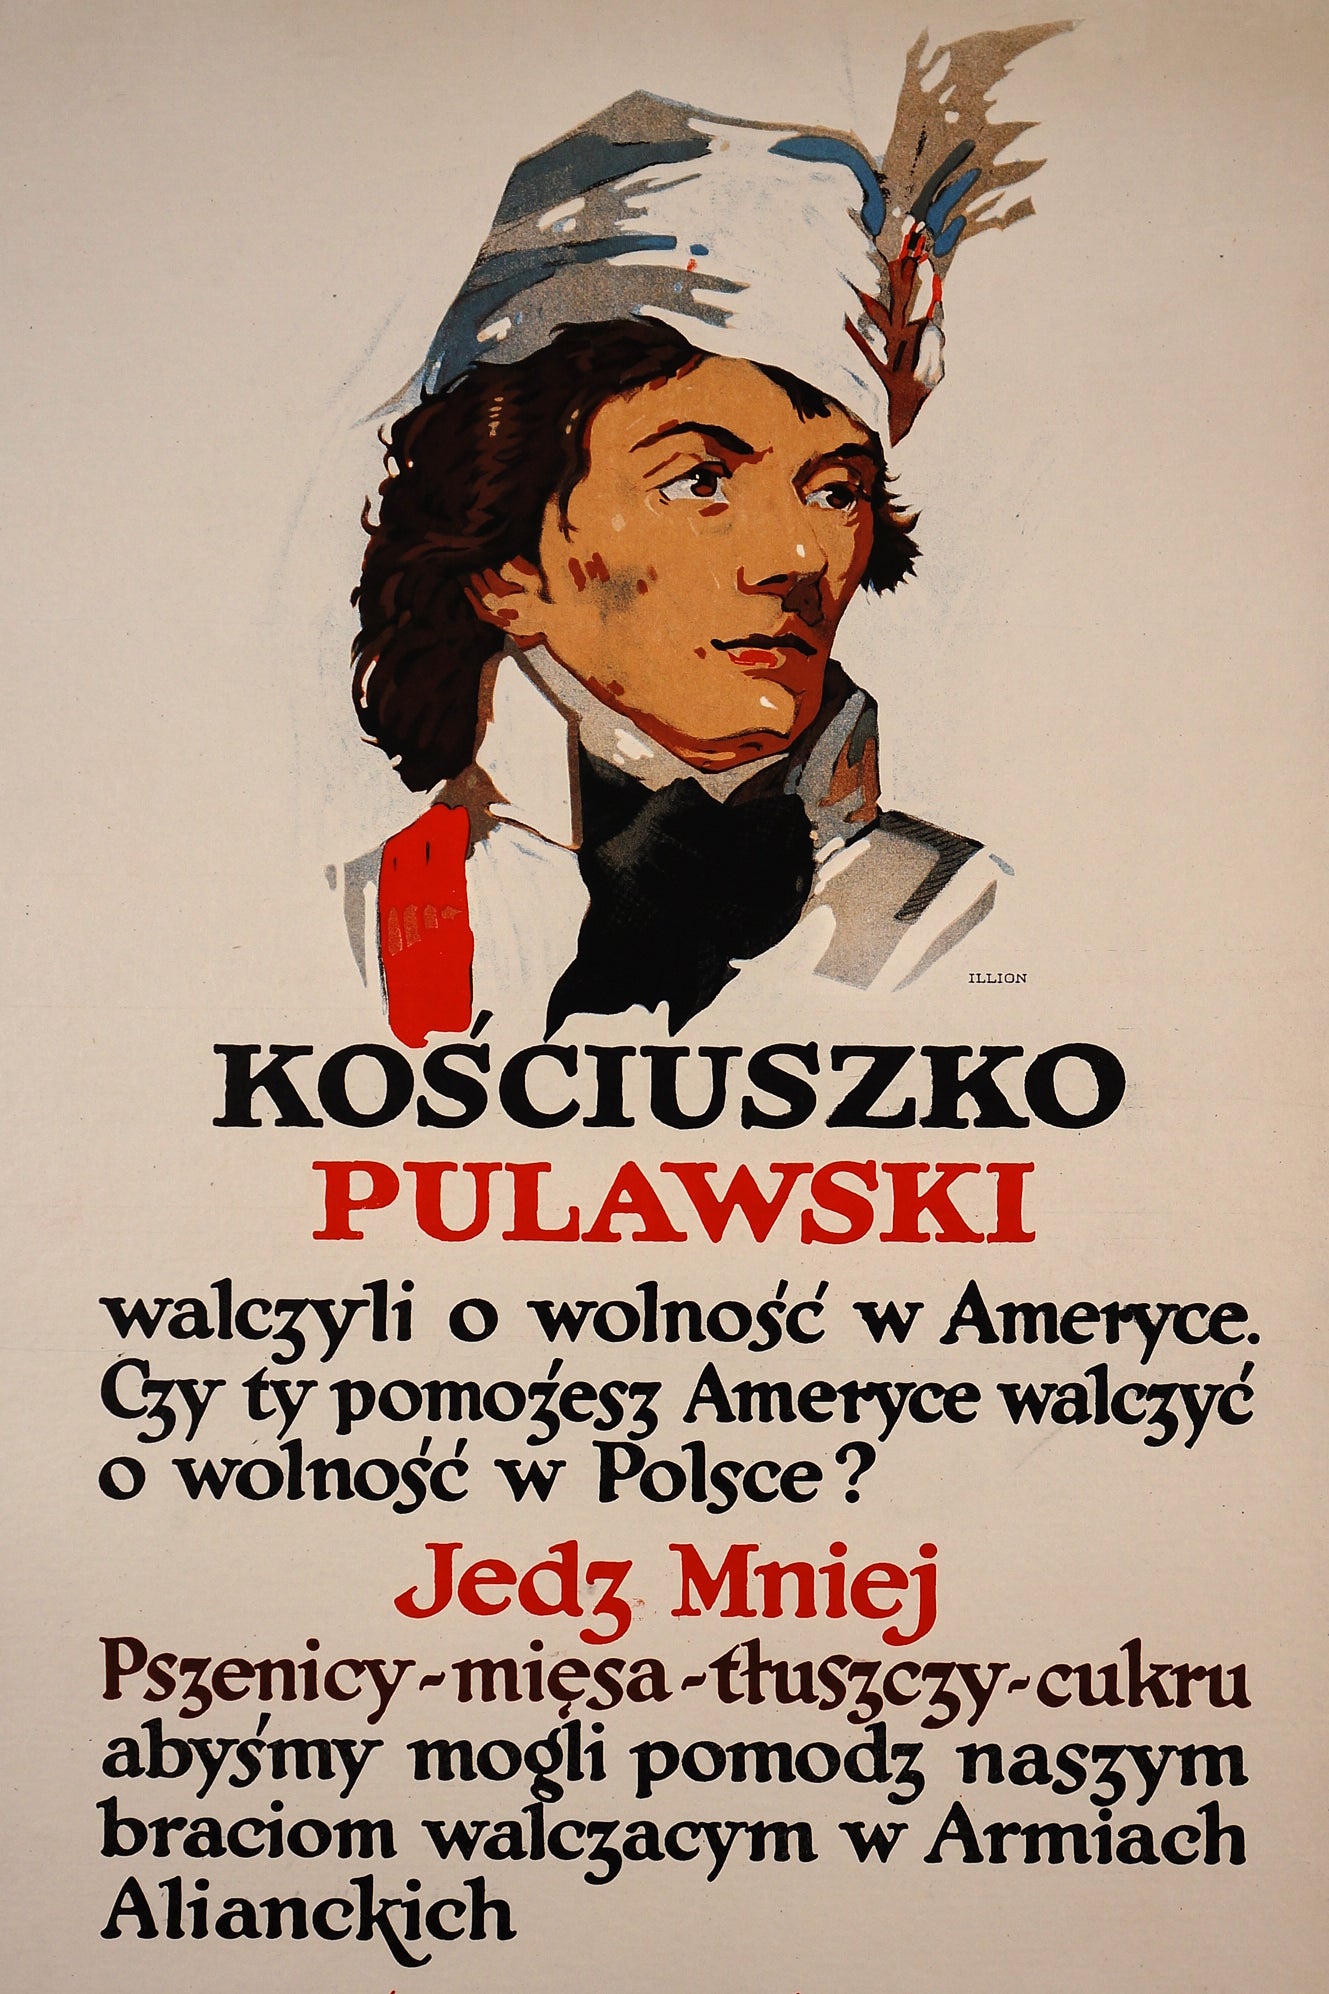 Pippi Calzelunghe e il Tesoro di Capitan Kid (2), Original Vintage Poster